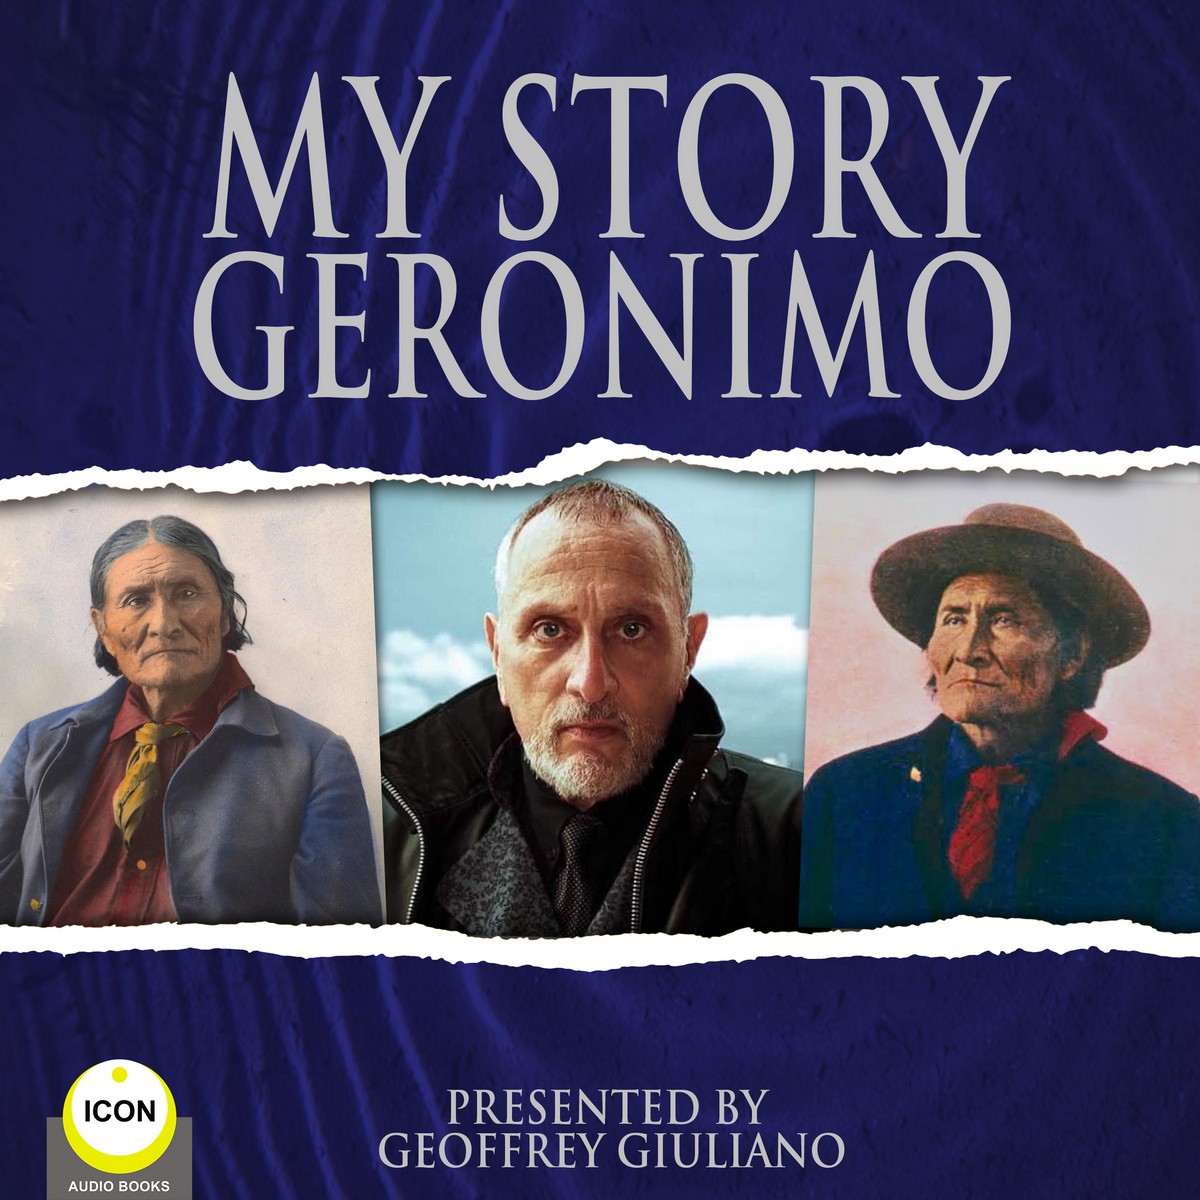 My Story Geronimo